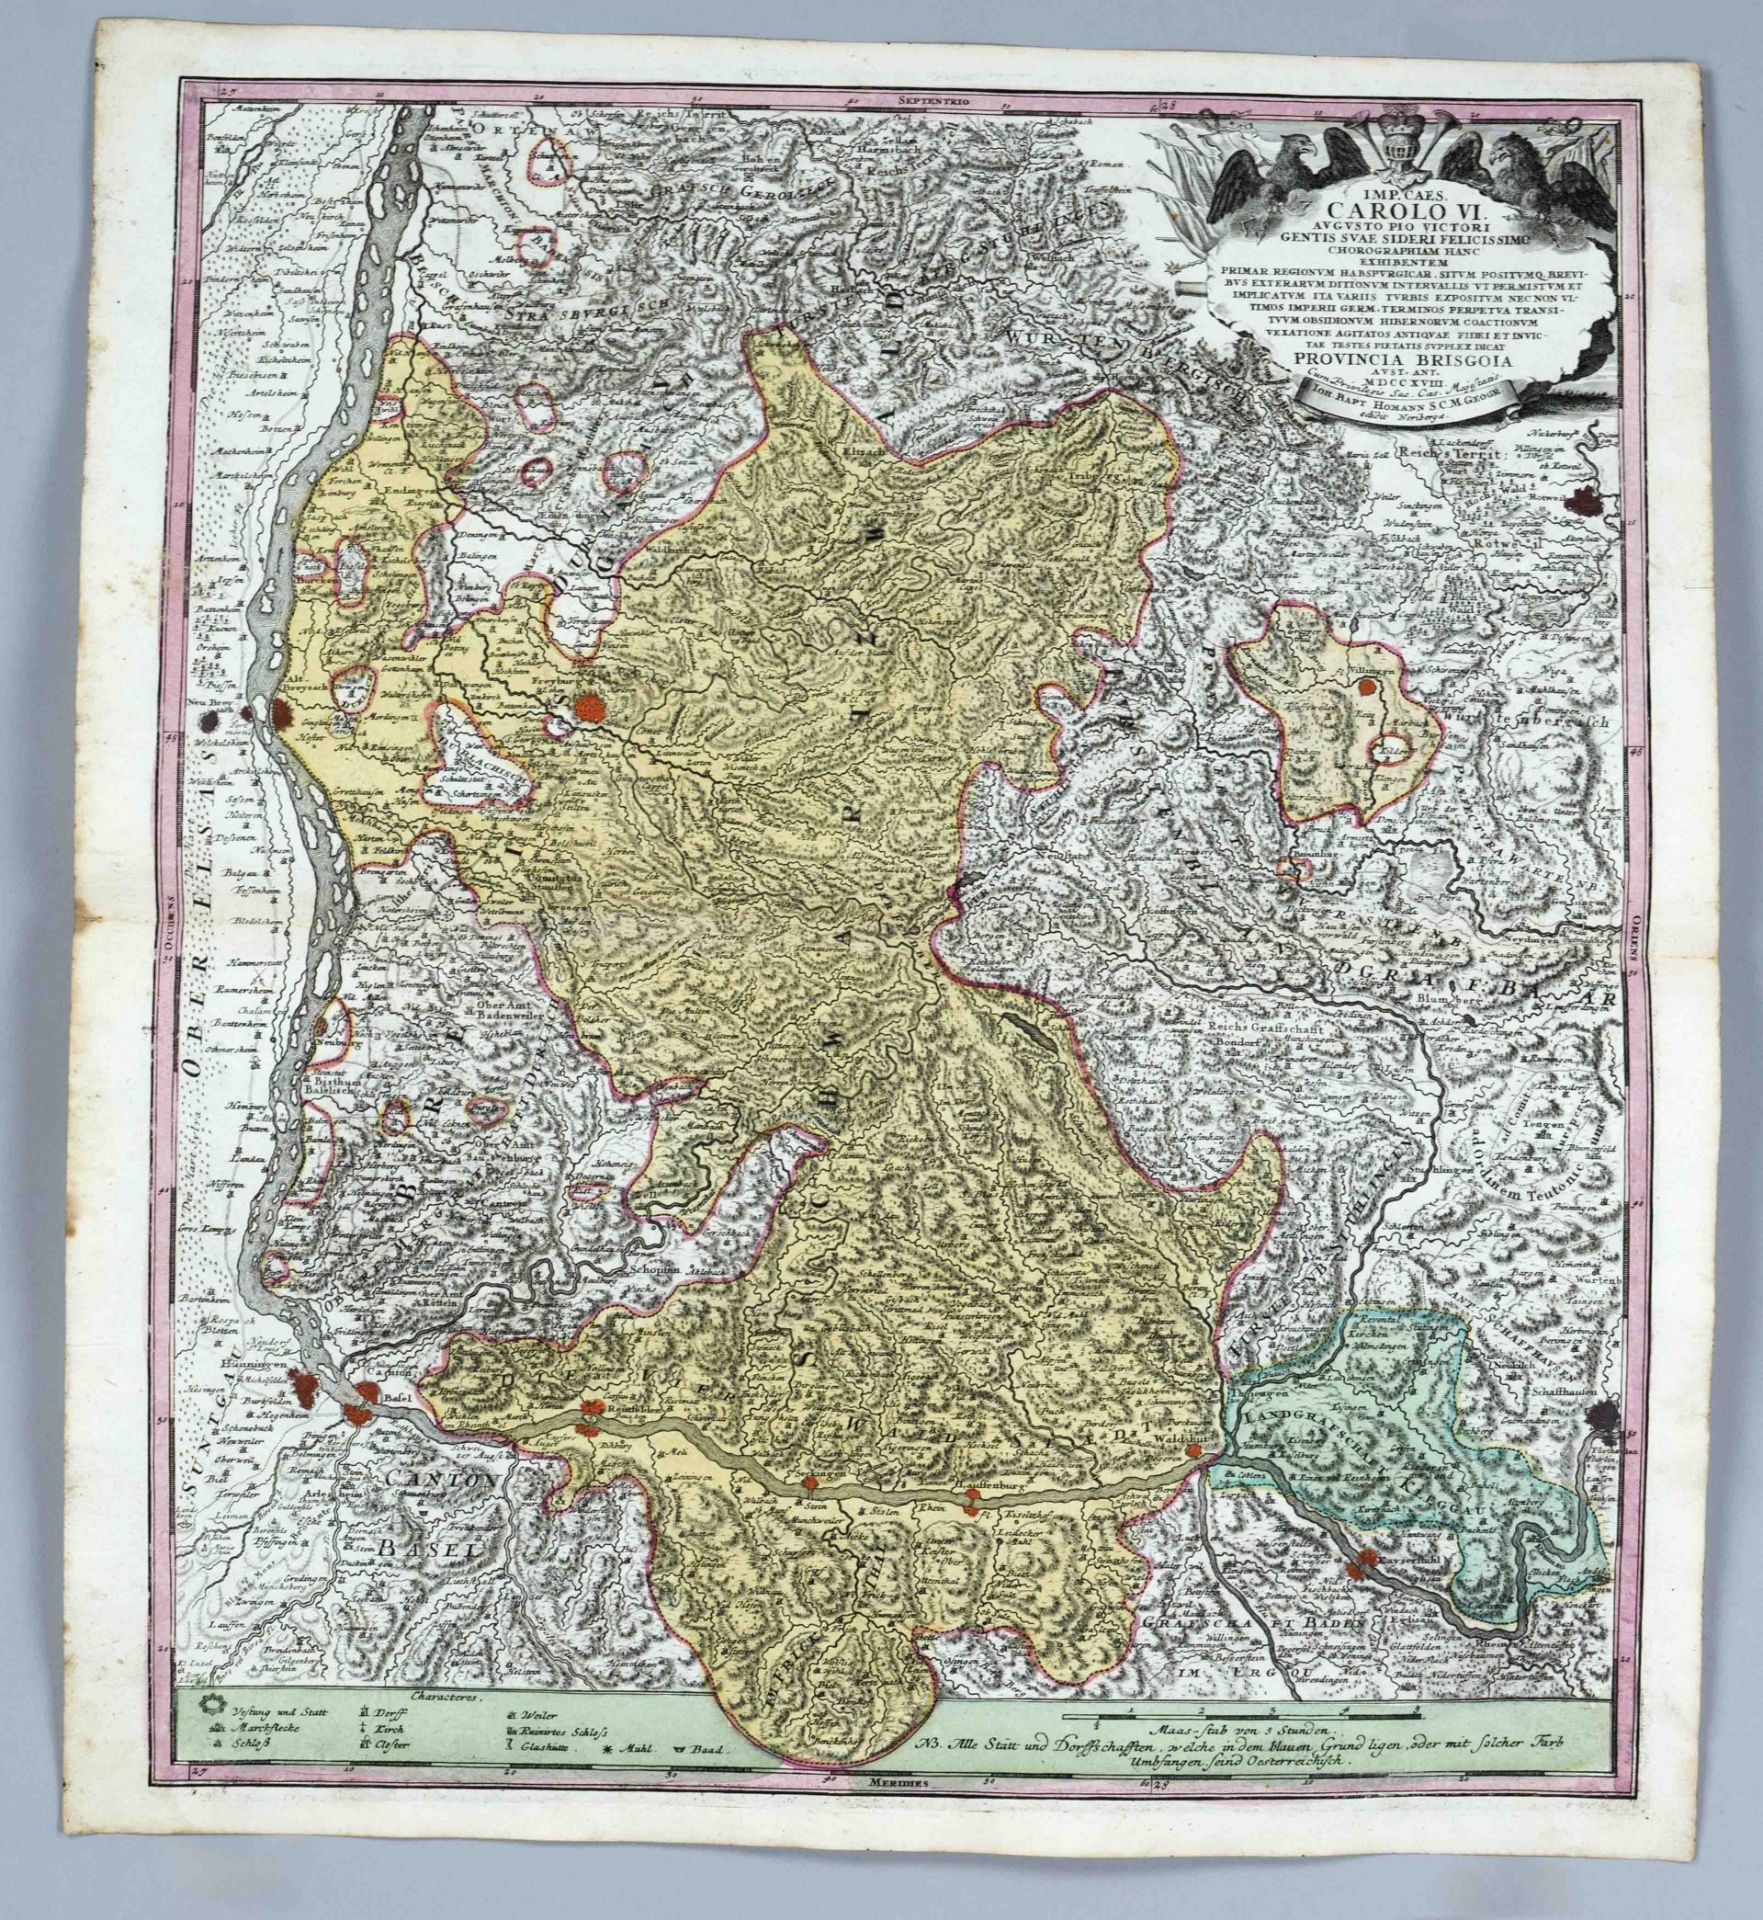 Historische Karte des Breisgaus